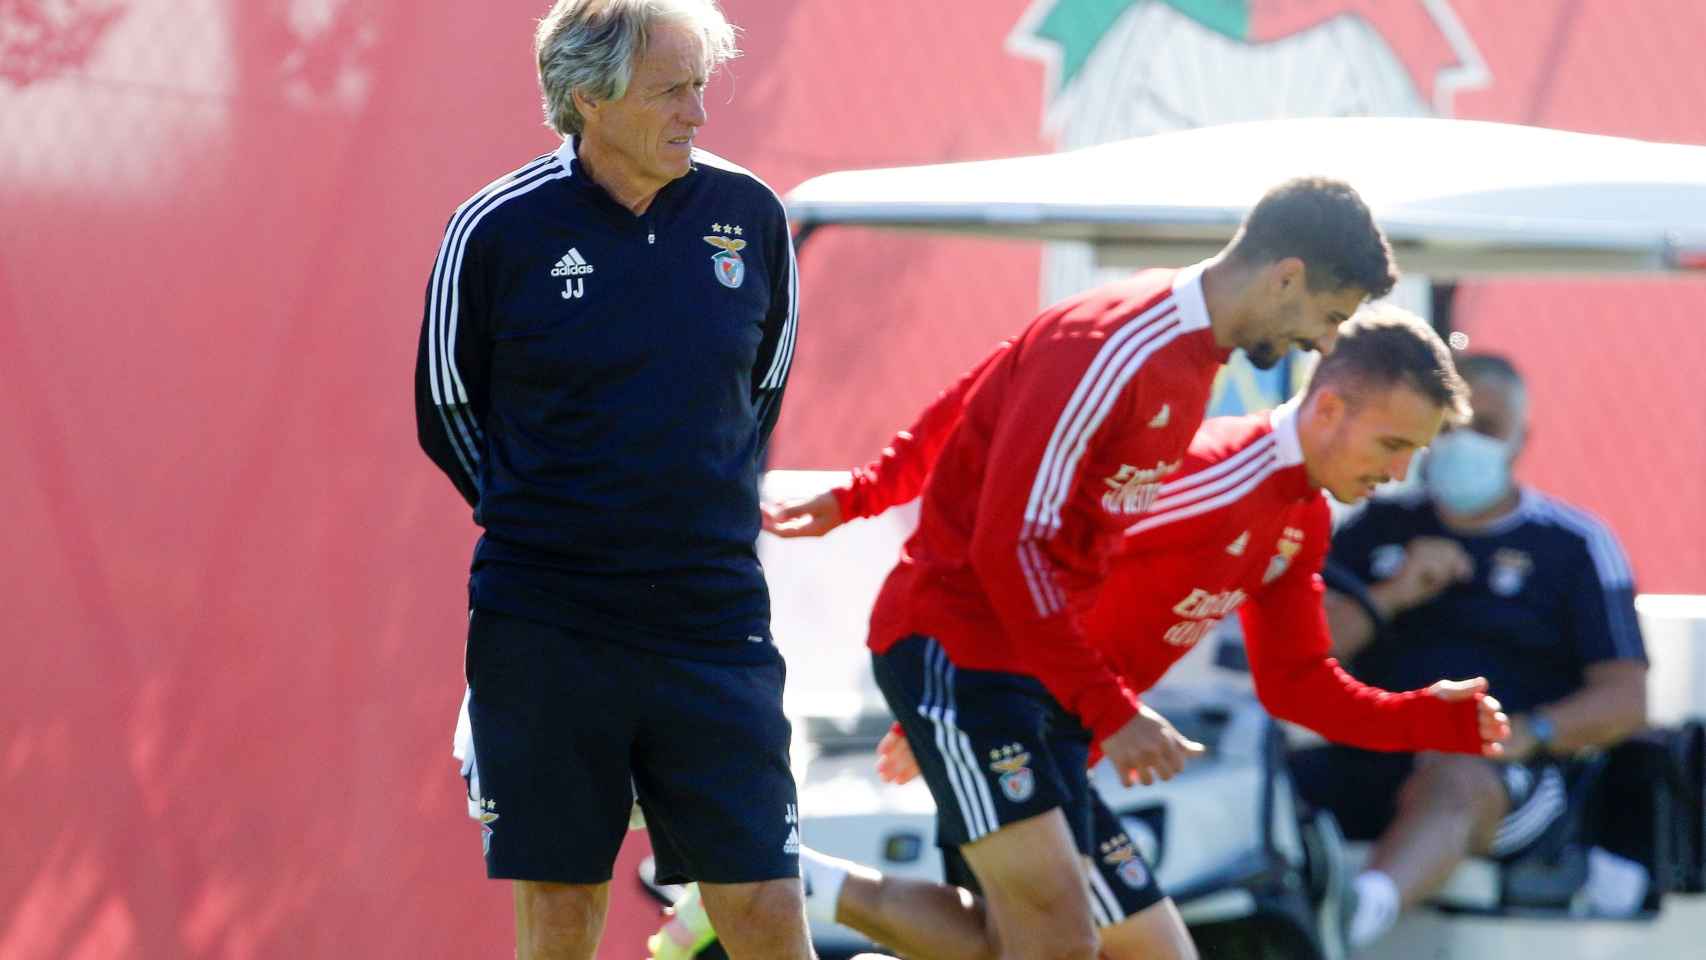 Jorge Jesús con el Benfica entrenando EFE